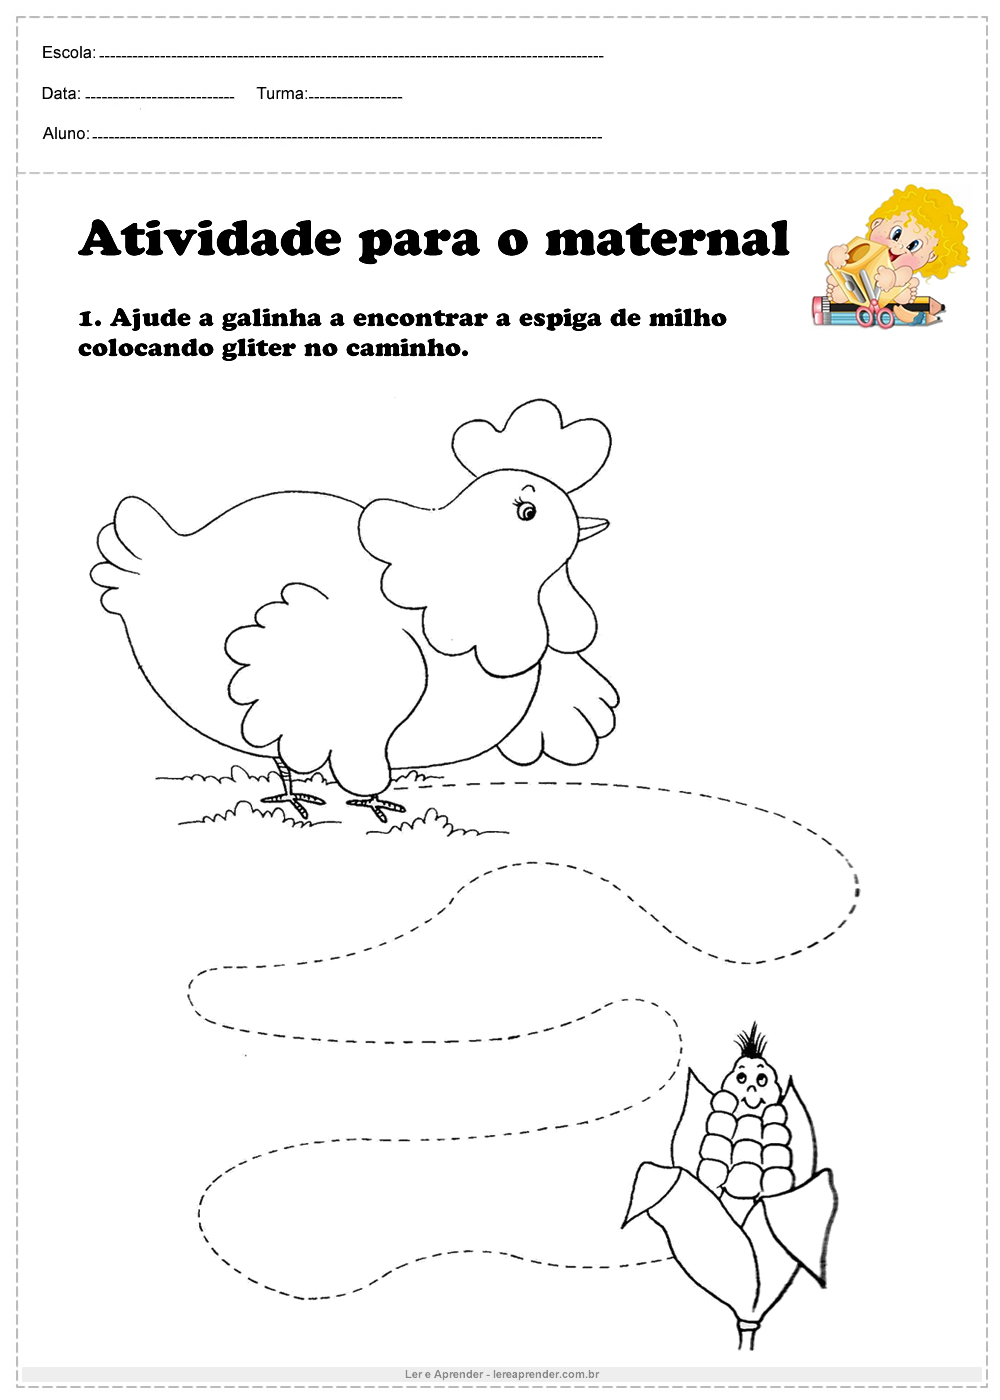 Atividade para o maternal ajude a galinha